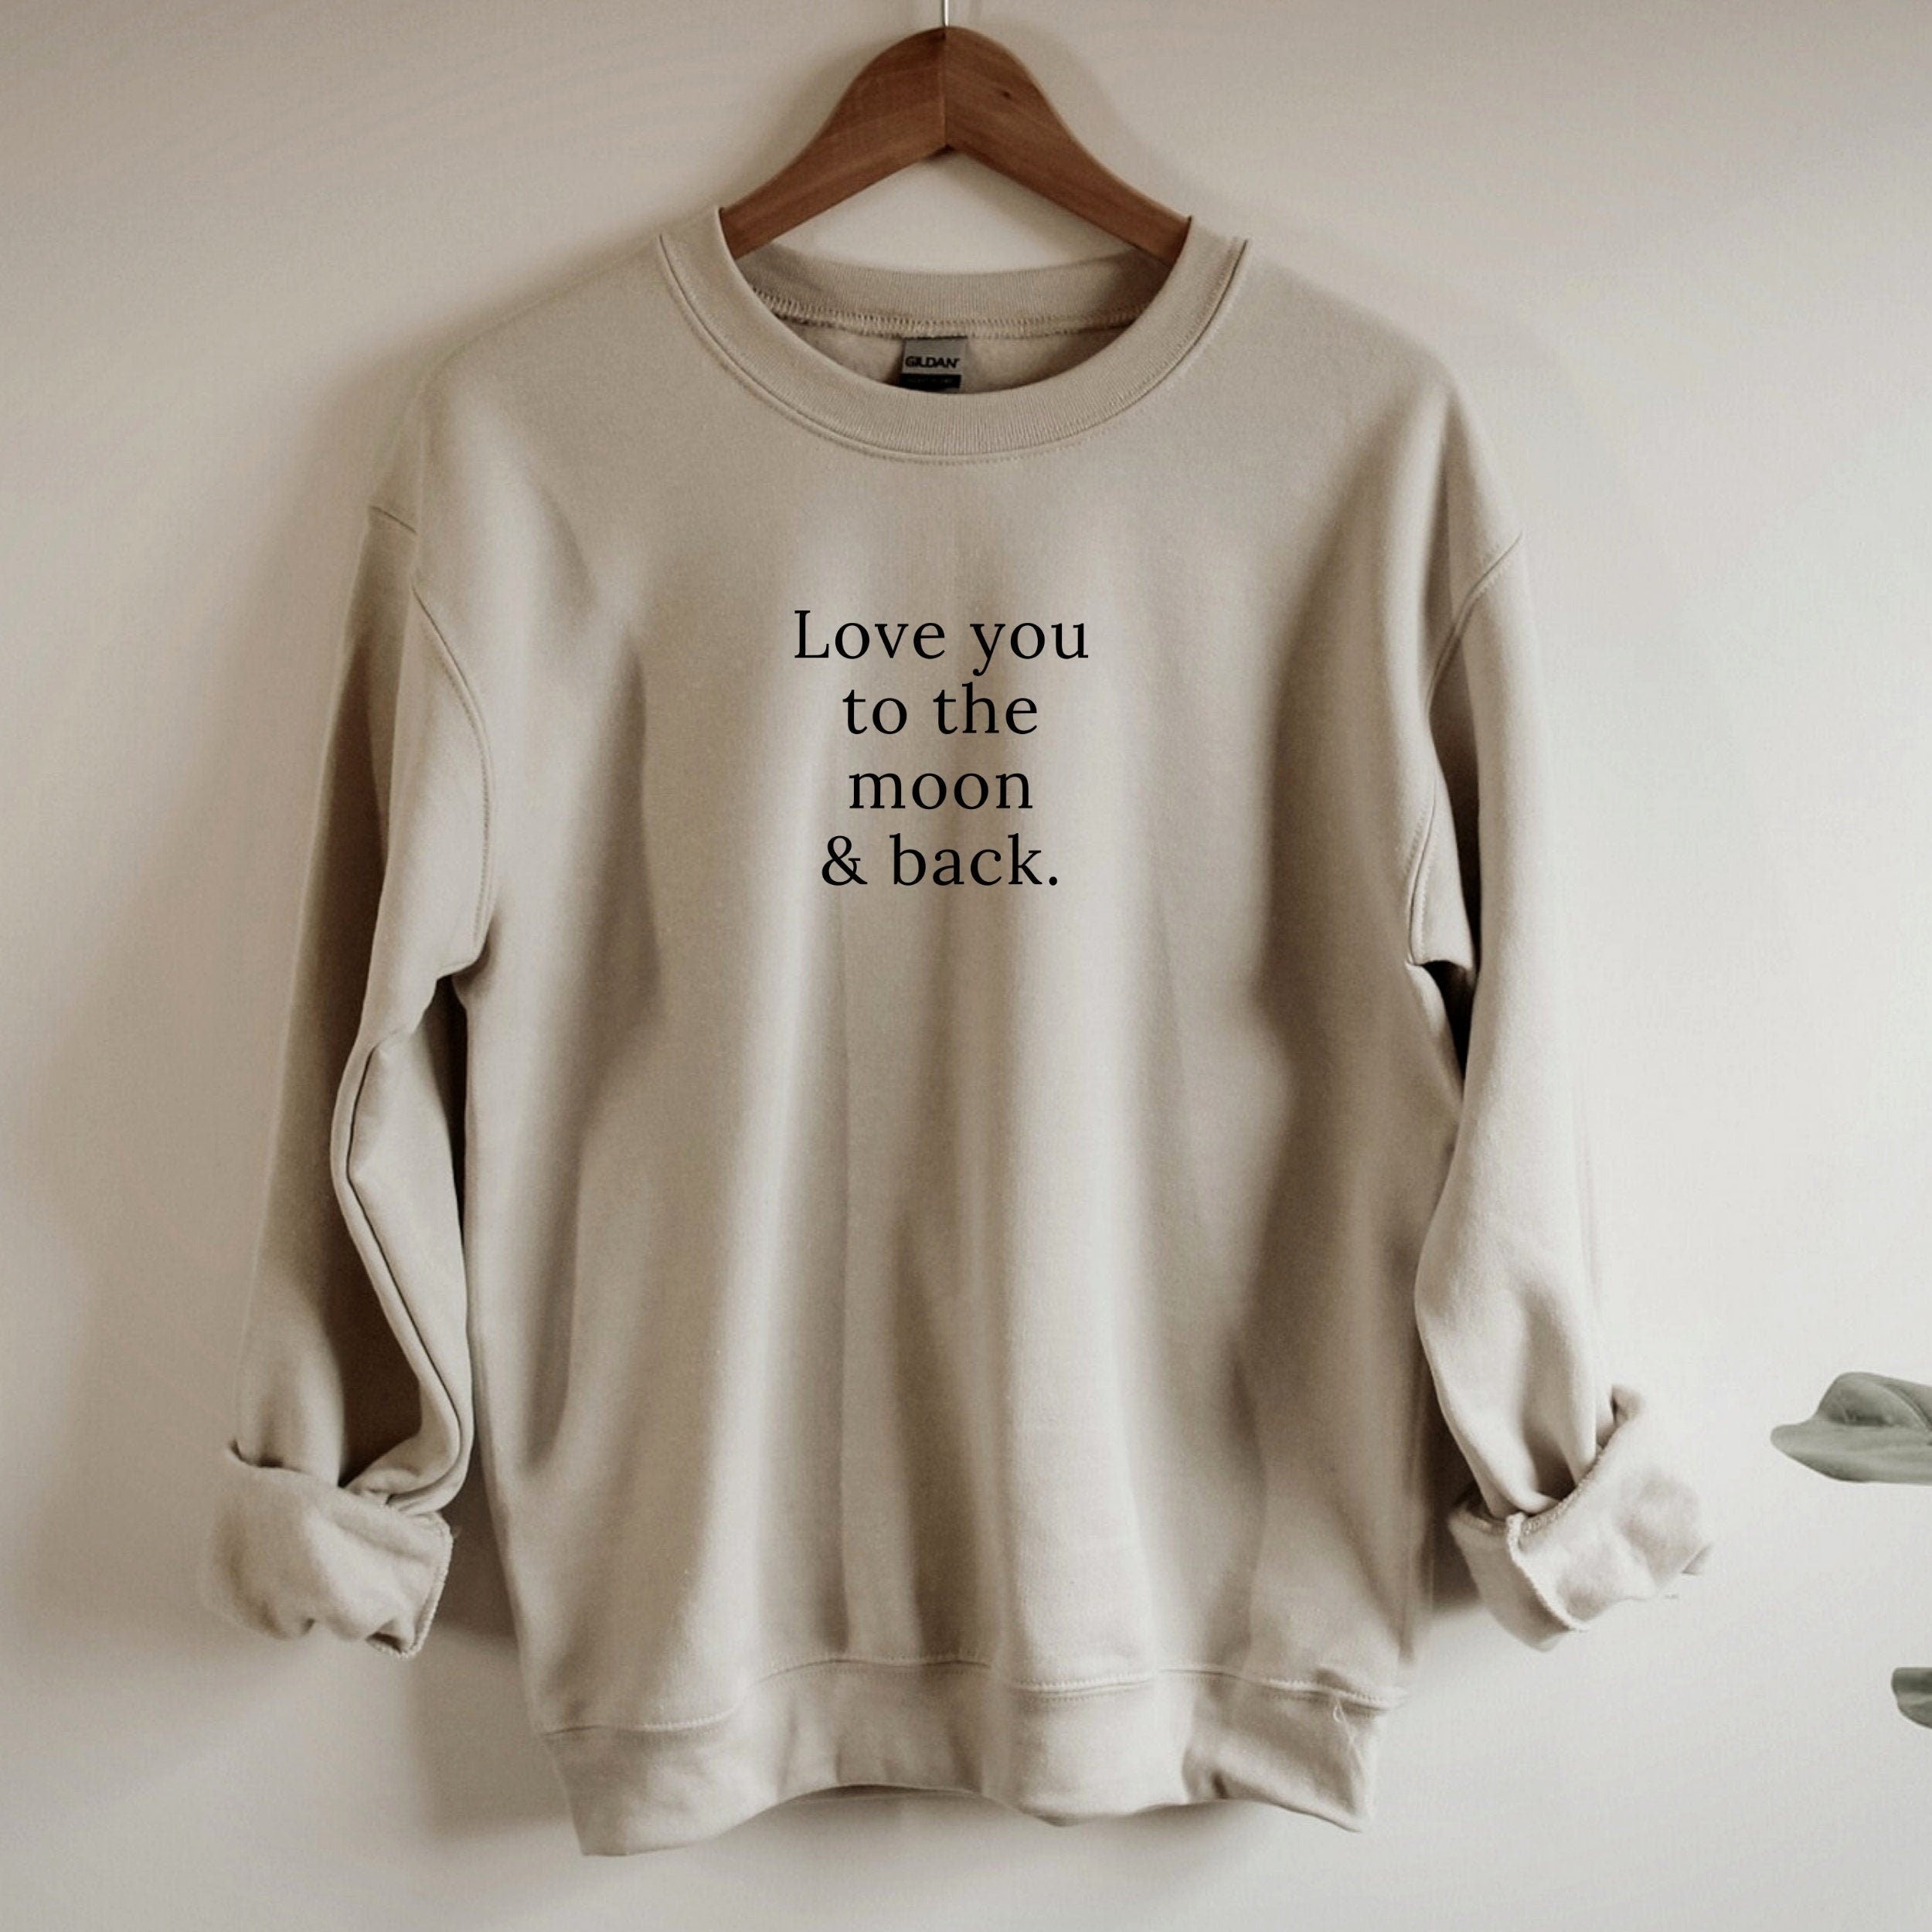 To the Moon & Back Sweatshirt